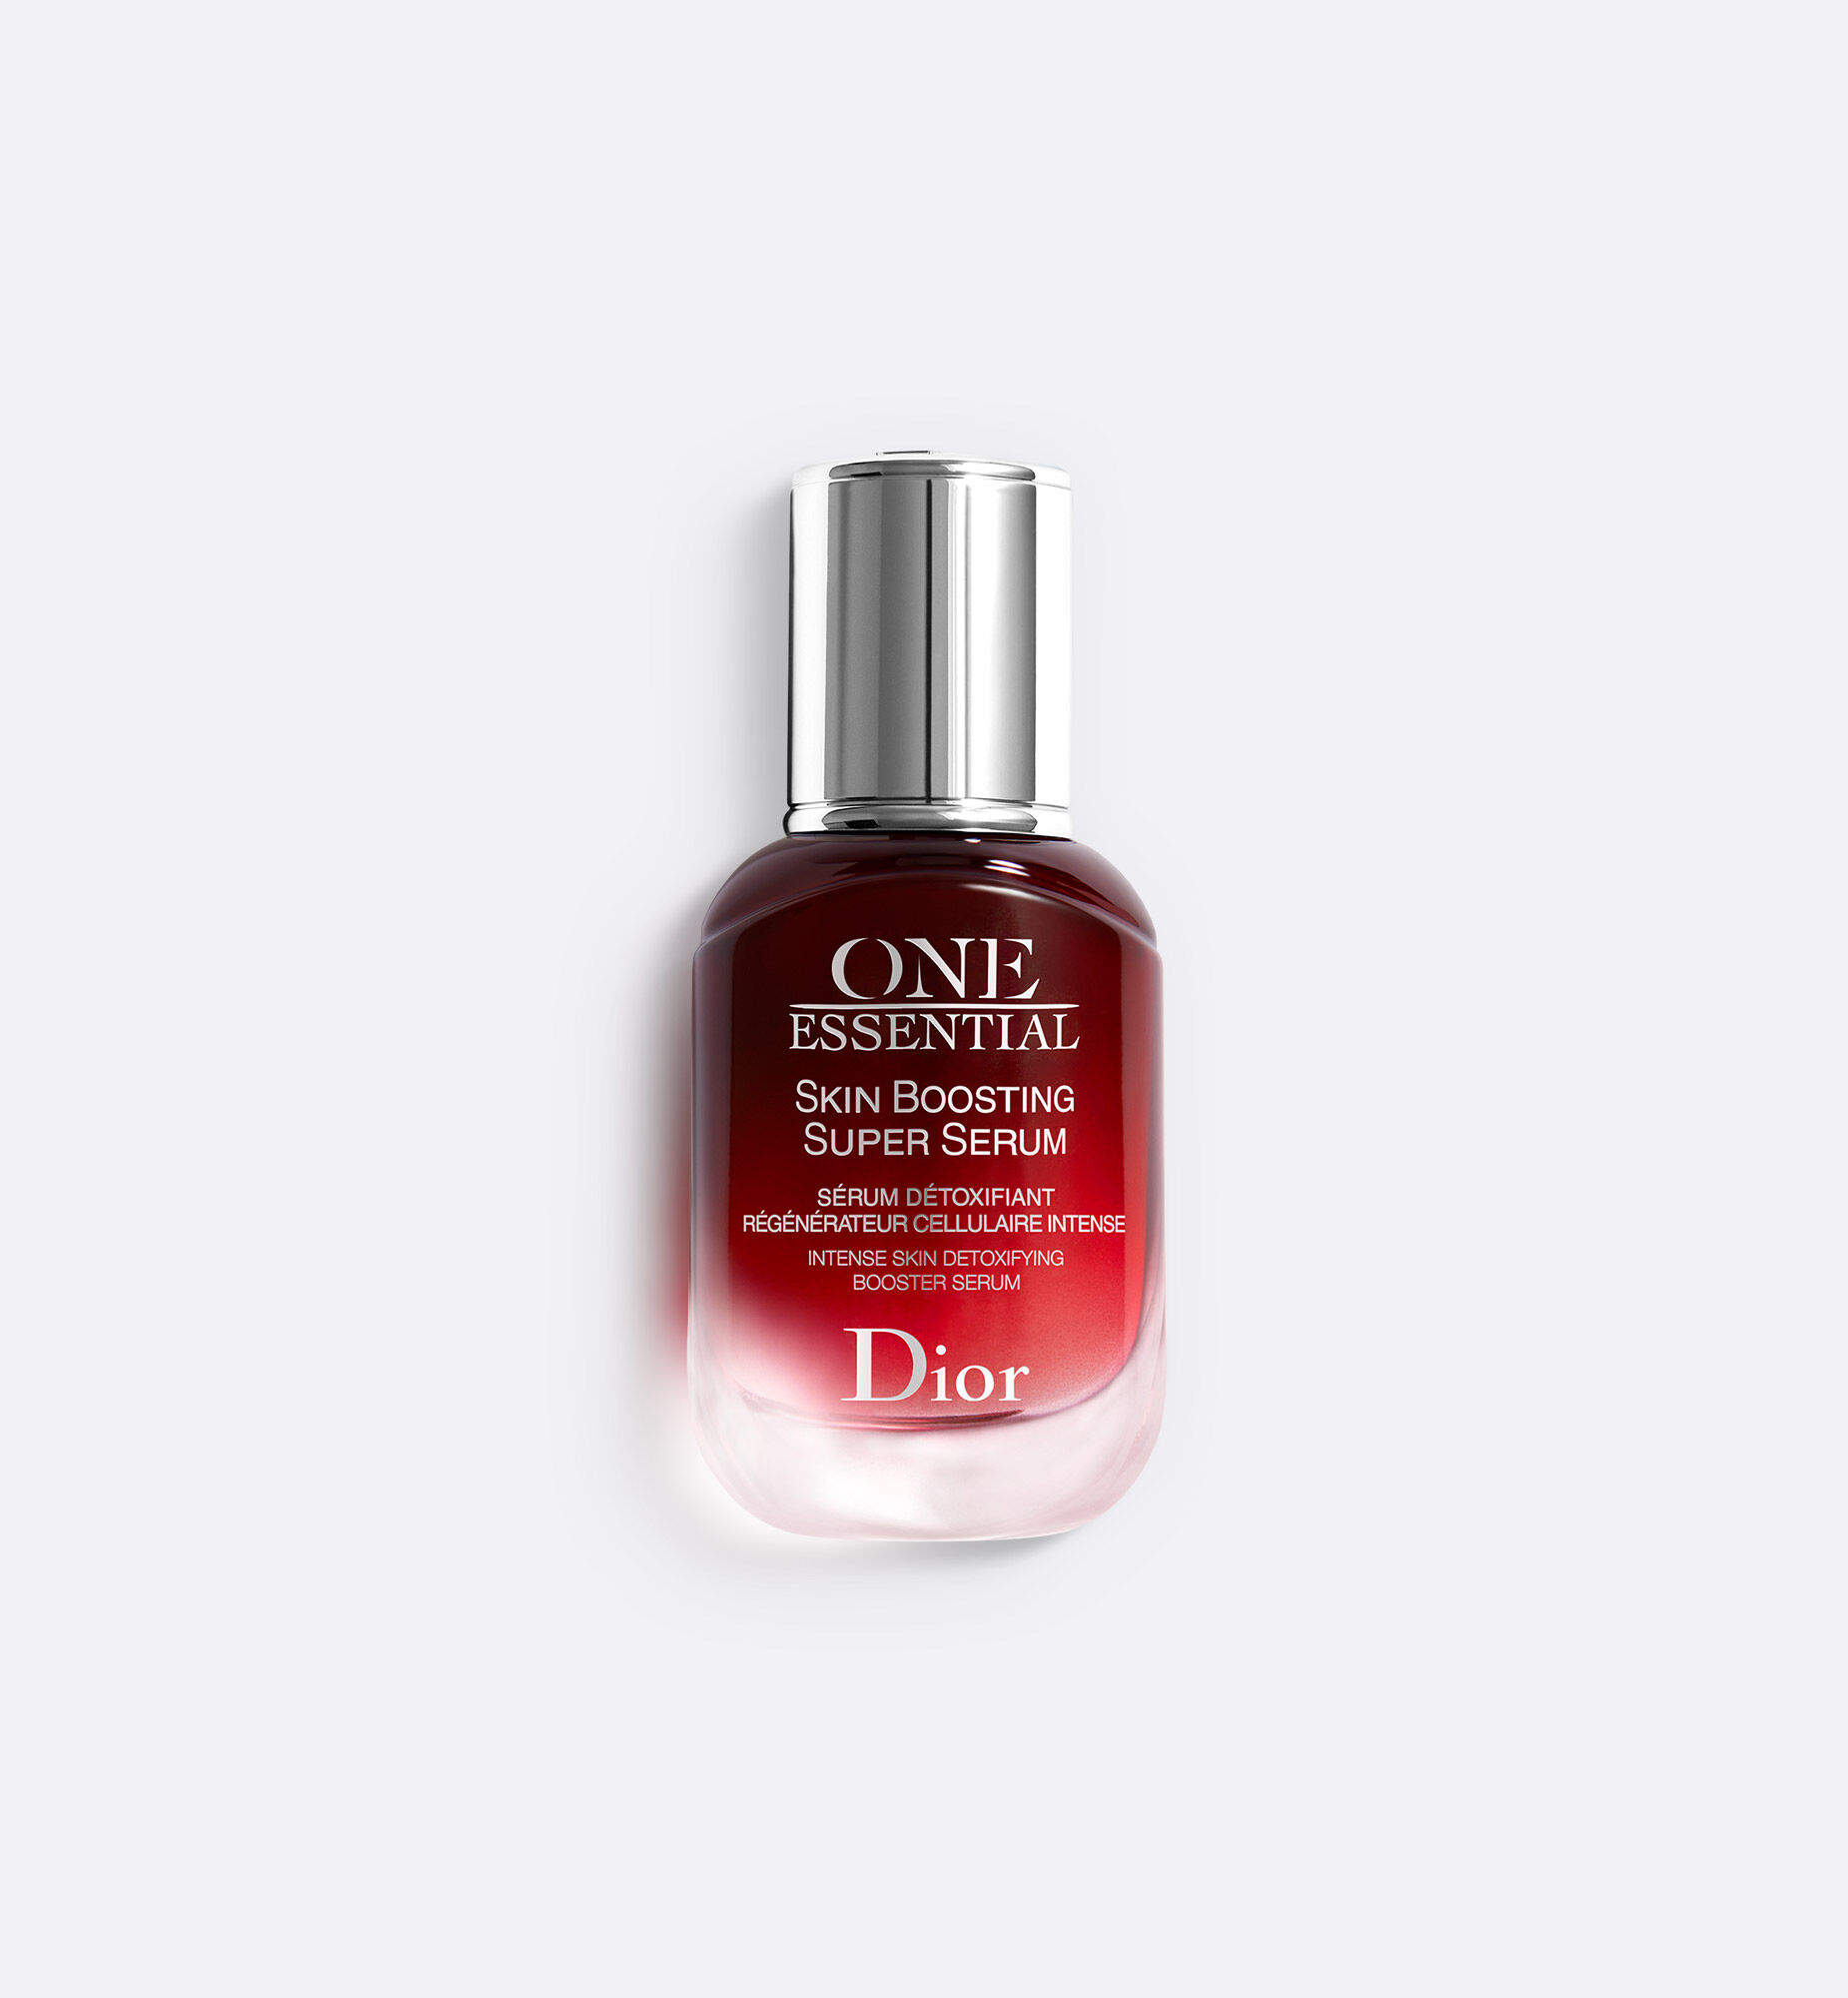 Tinh chất Dior One Essential Skin Boosting SUPER Serum 30ml full seal date  42021  Shopee Việt Nam